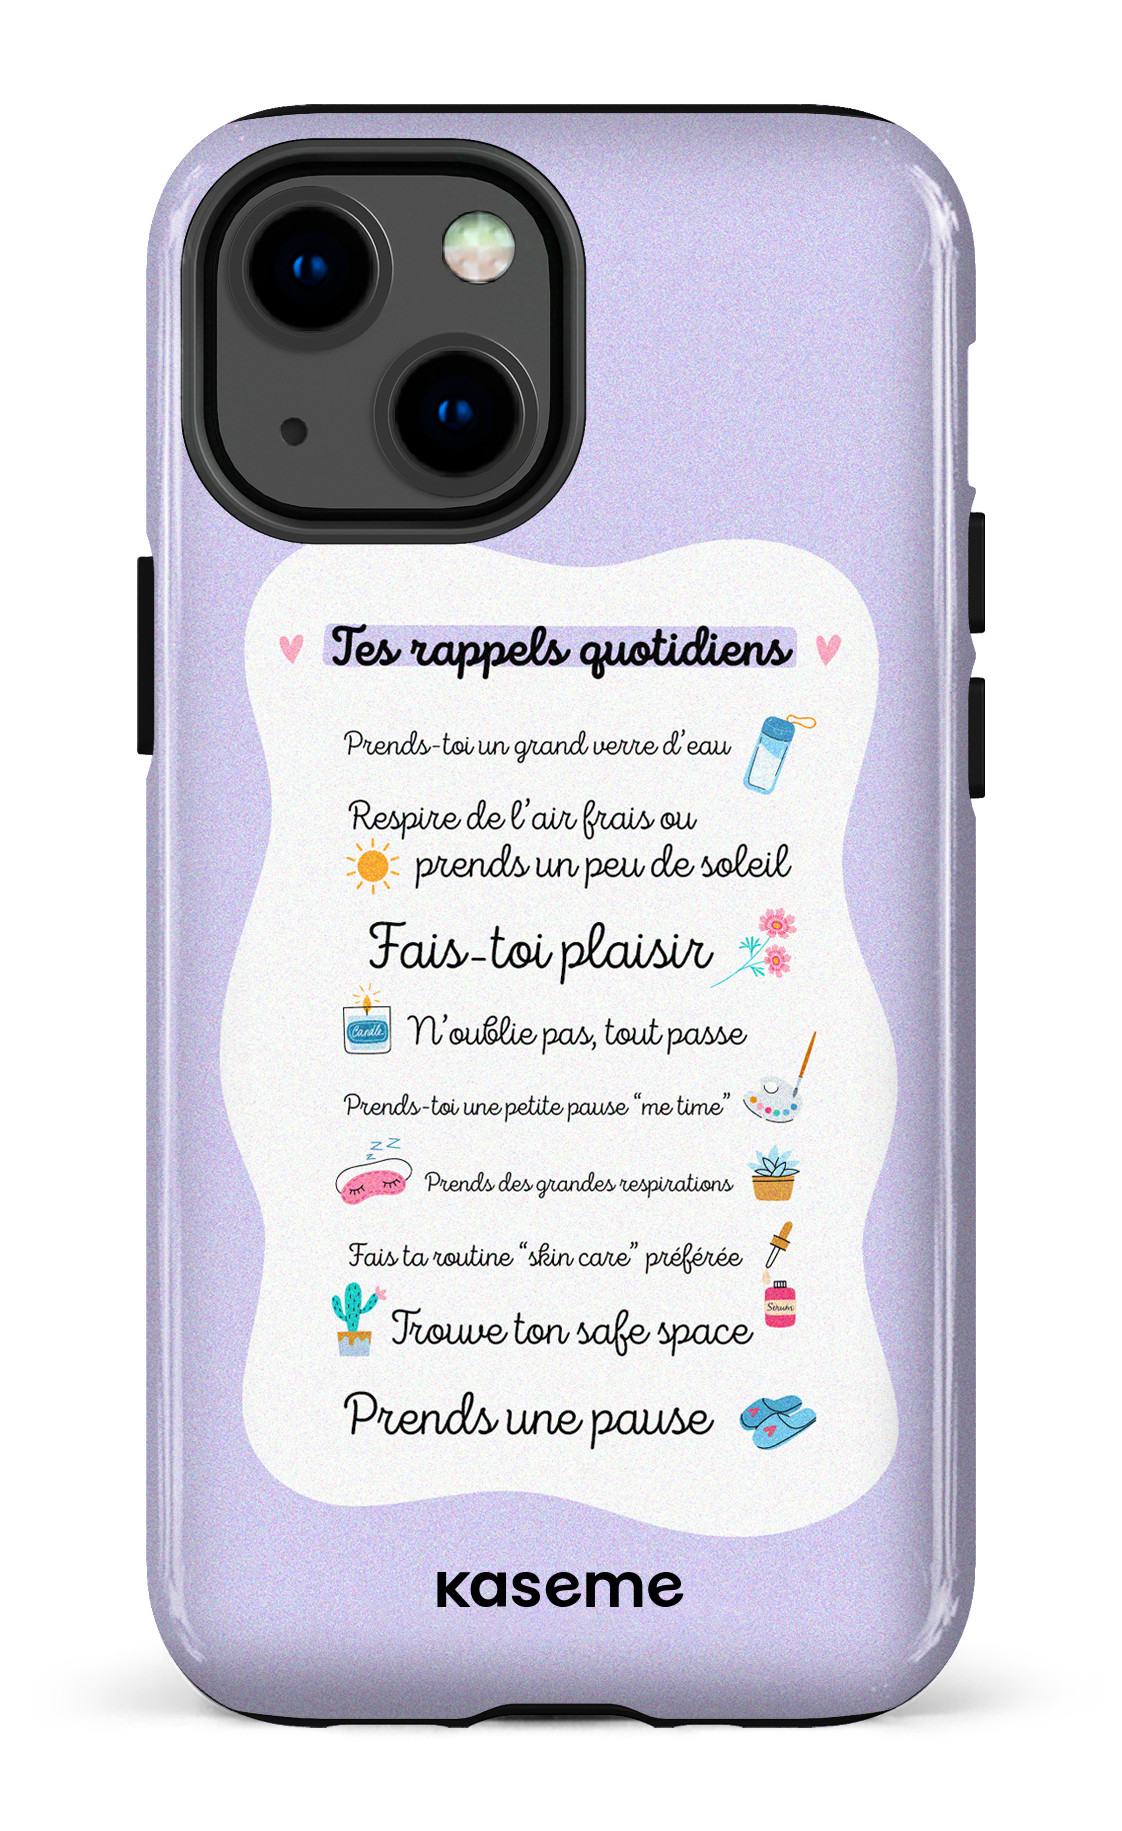 Tes rappels quotidiens purple - iPhone 13 Mini